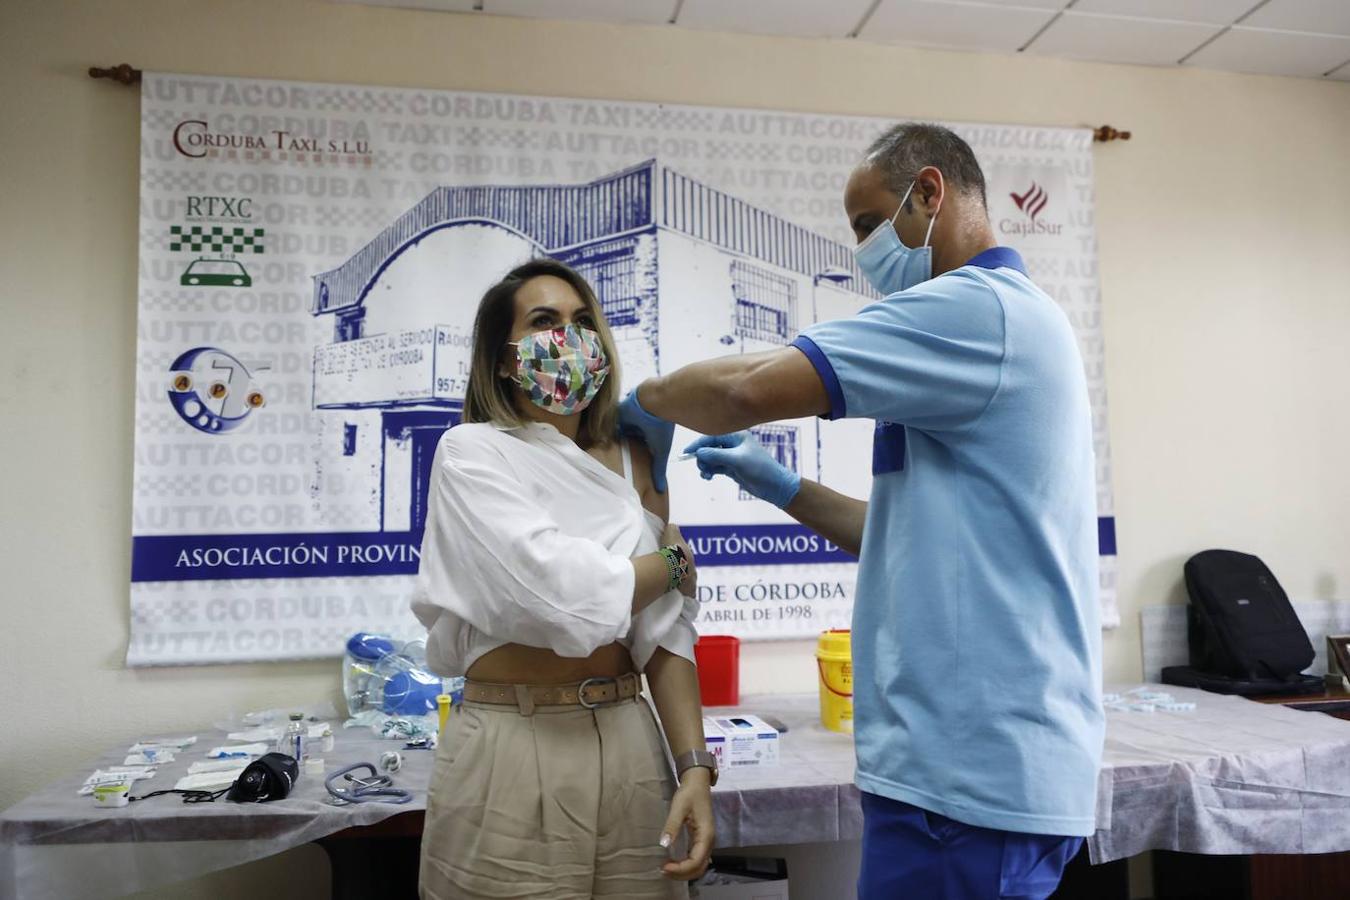 La vacunación de taxistas y autónomos en Córdoba, en imágenes